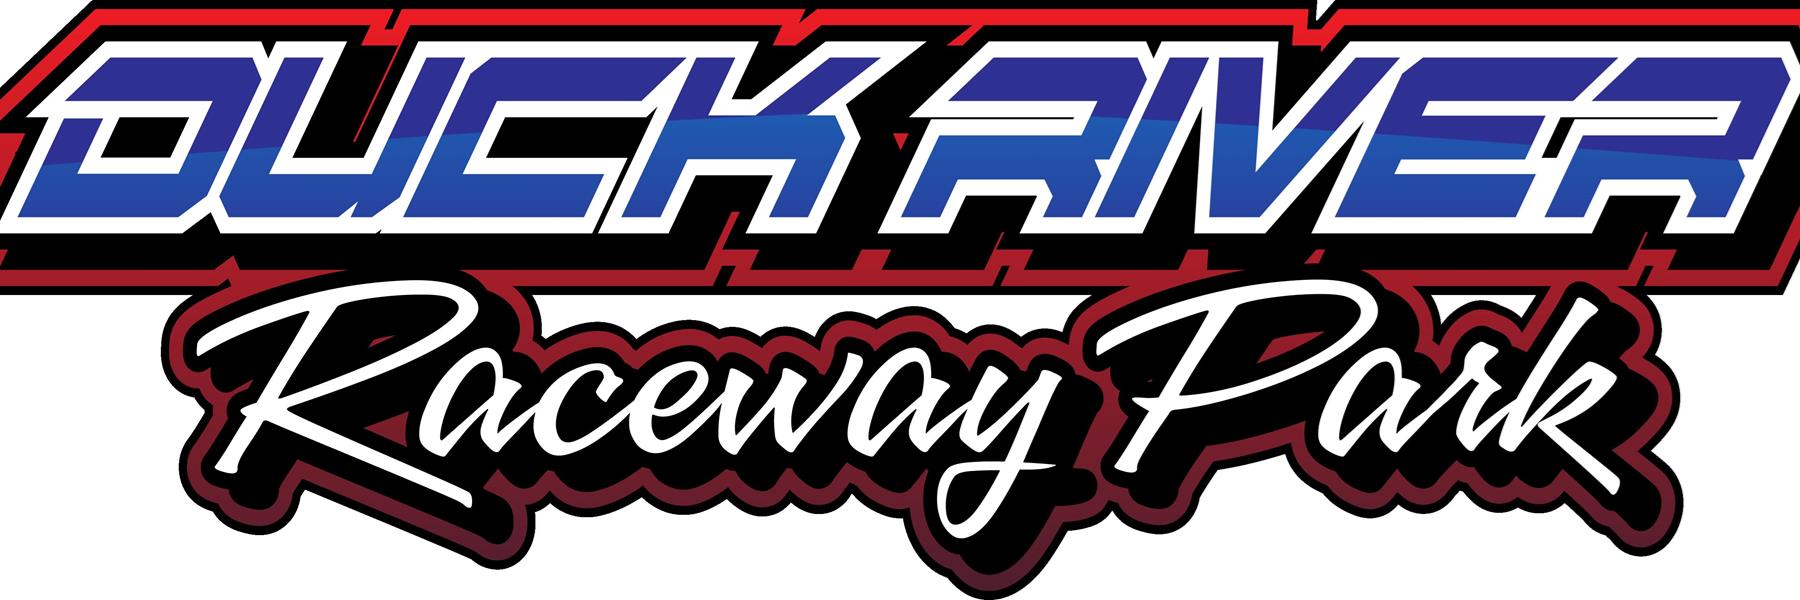 8/6/2022 - Duck River Raceway Park